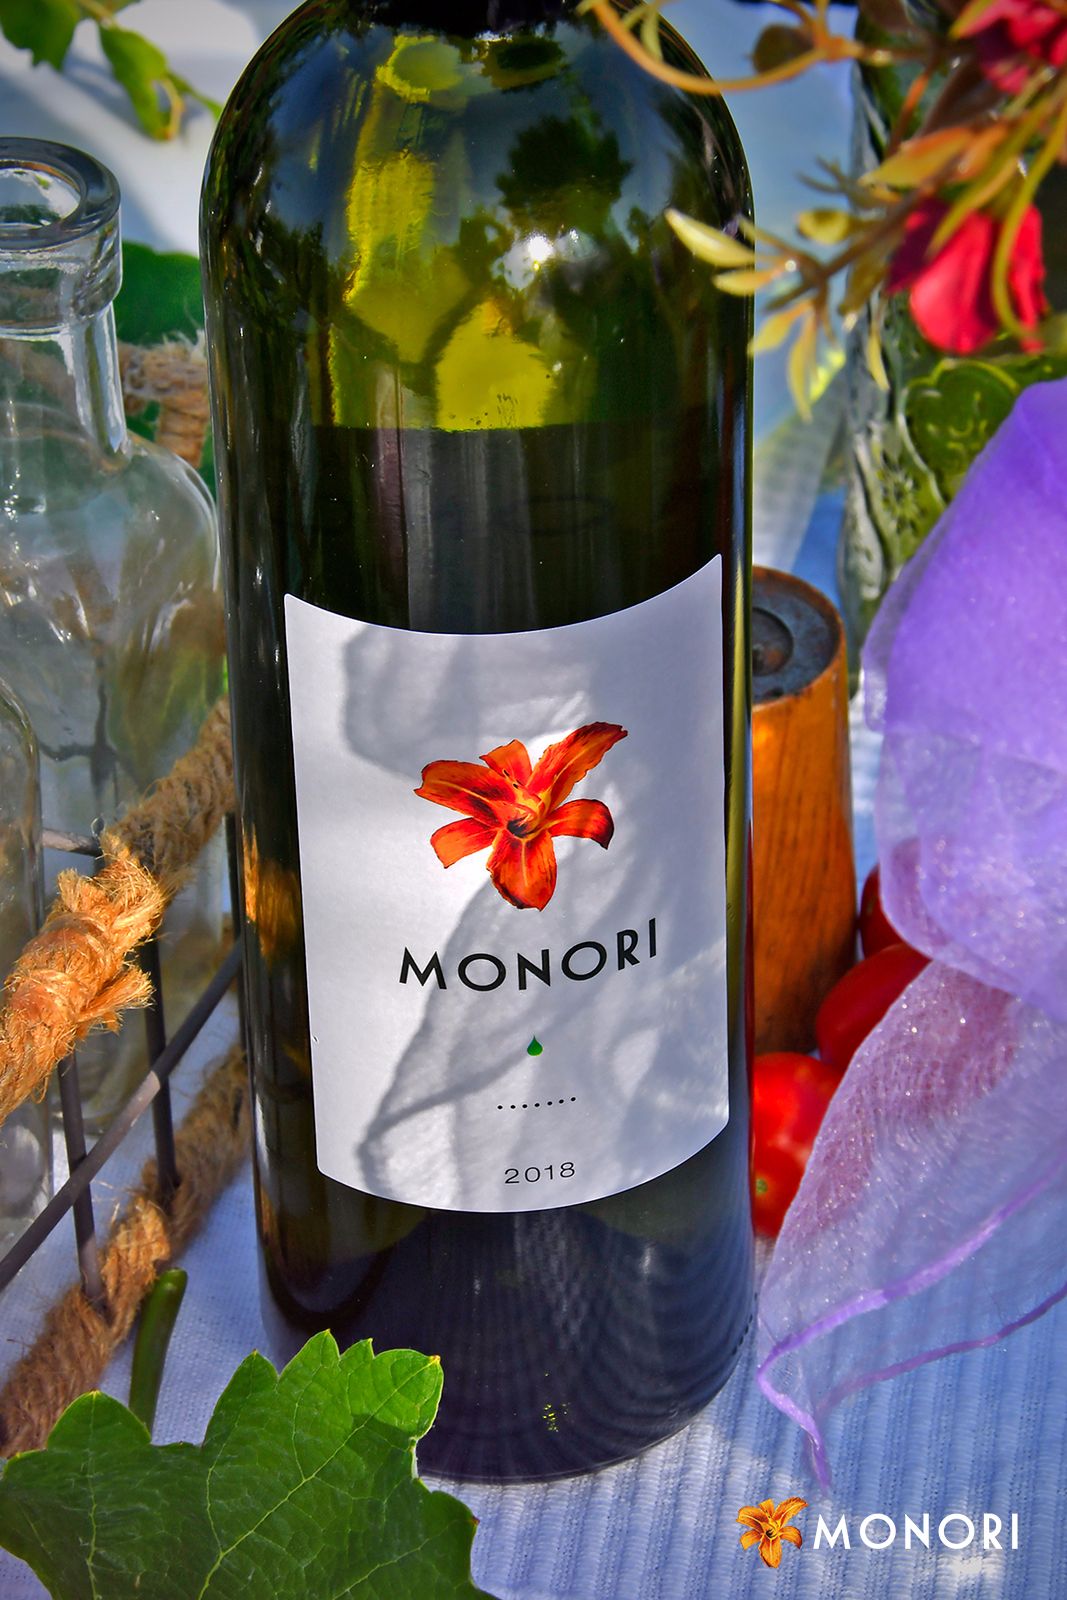 Monor white wine